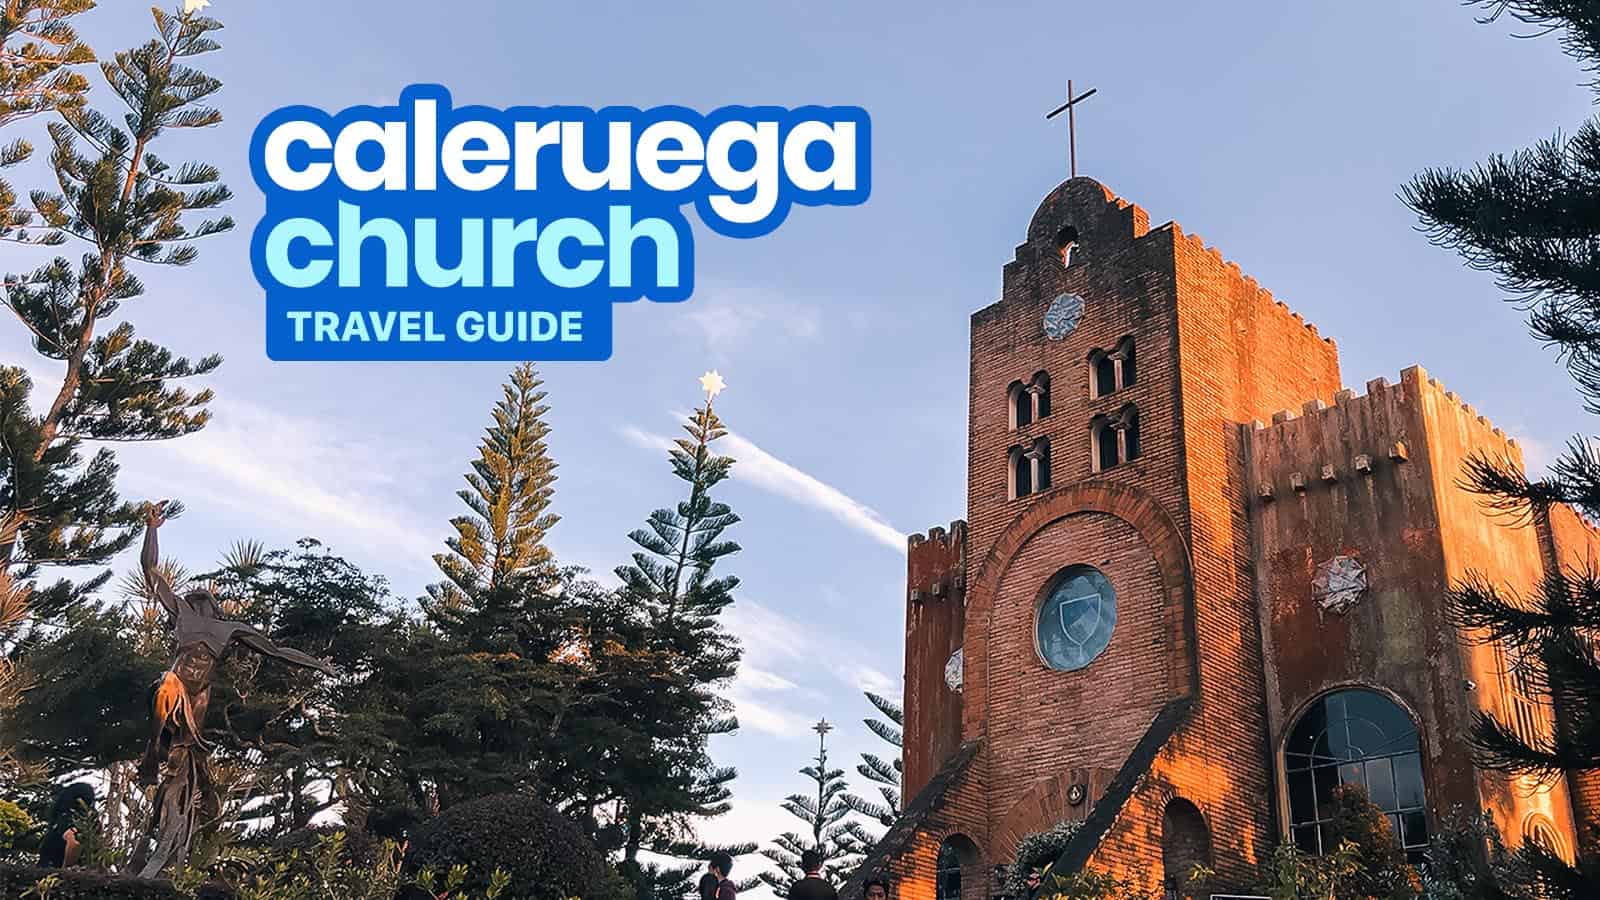 巴丹加斯，卡勒鲁加教堂:旅游指南和如何到达那里